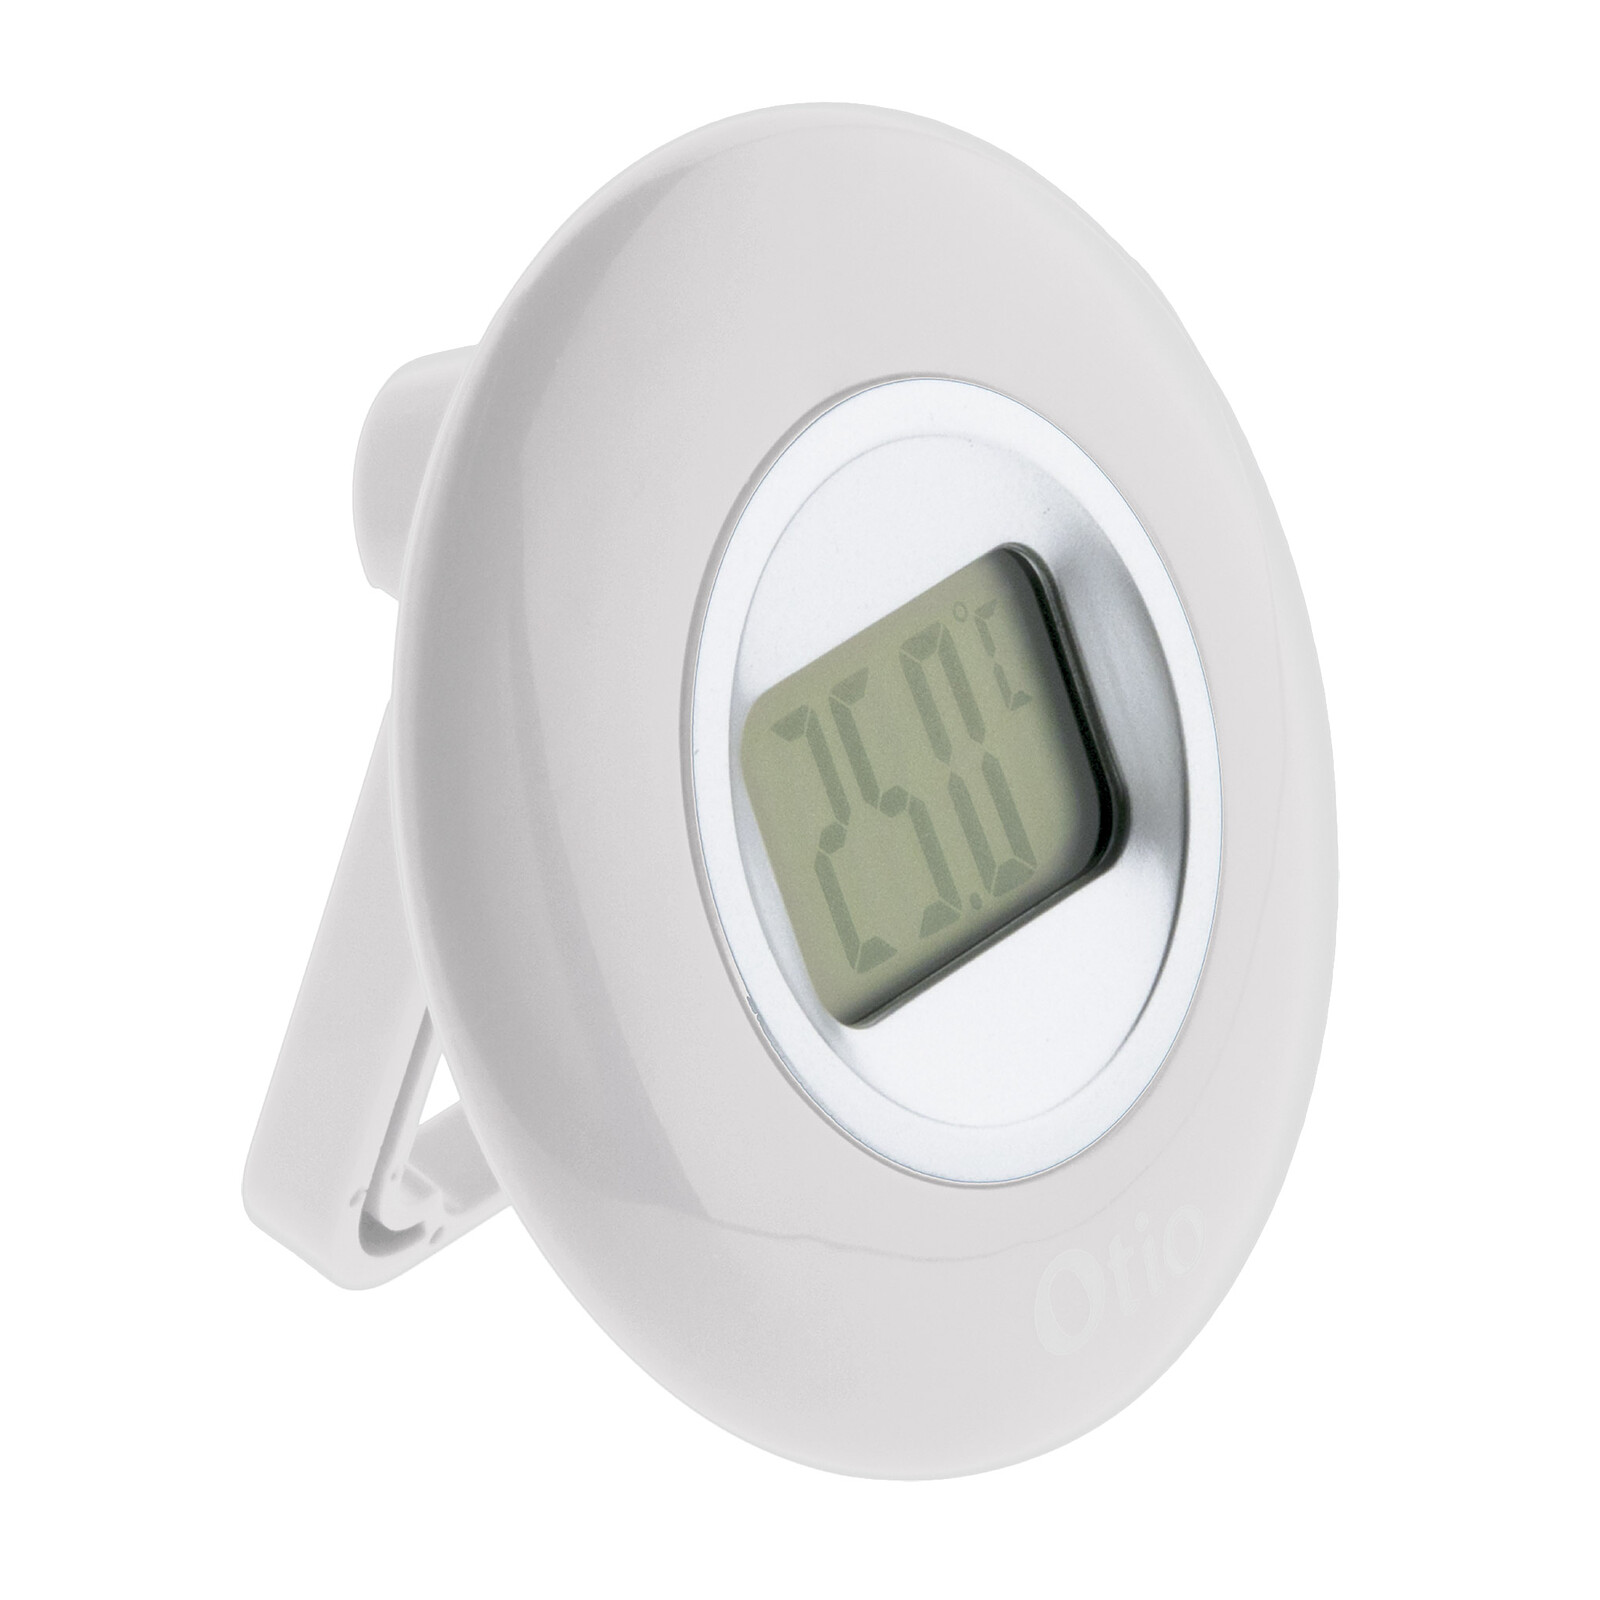 Thermomètre intérieur / Extérieur filaire Blanc - Otio - La Poste